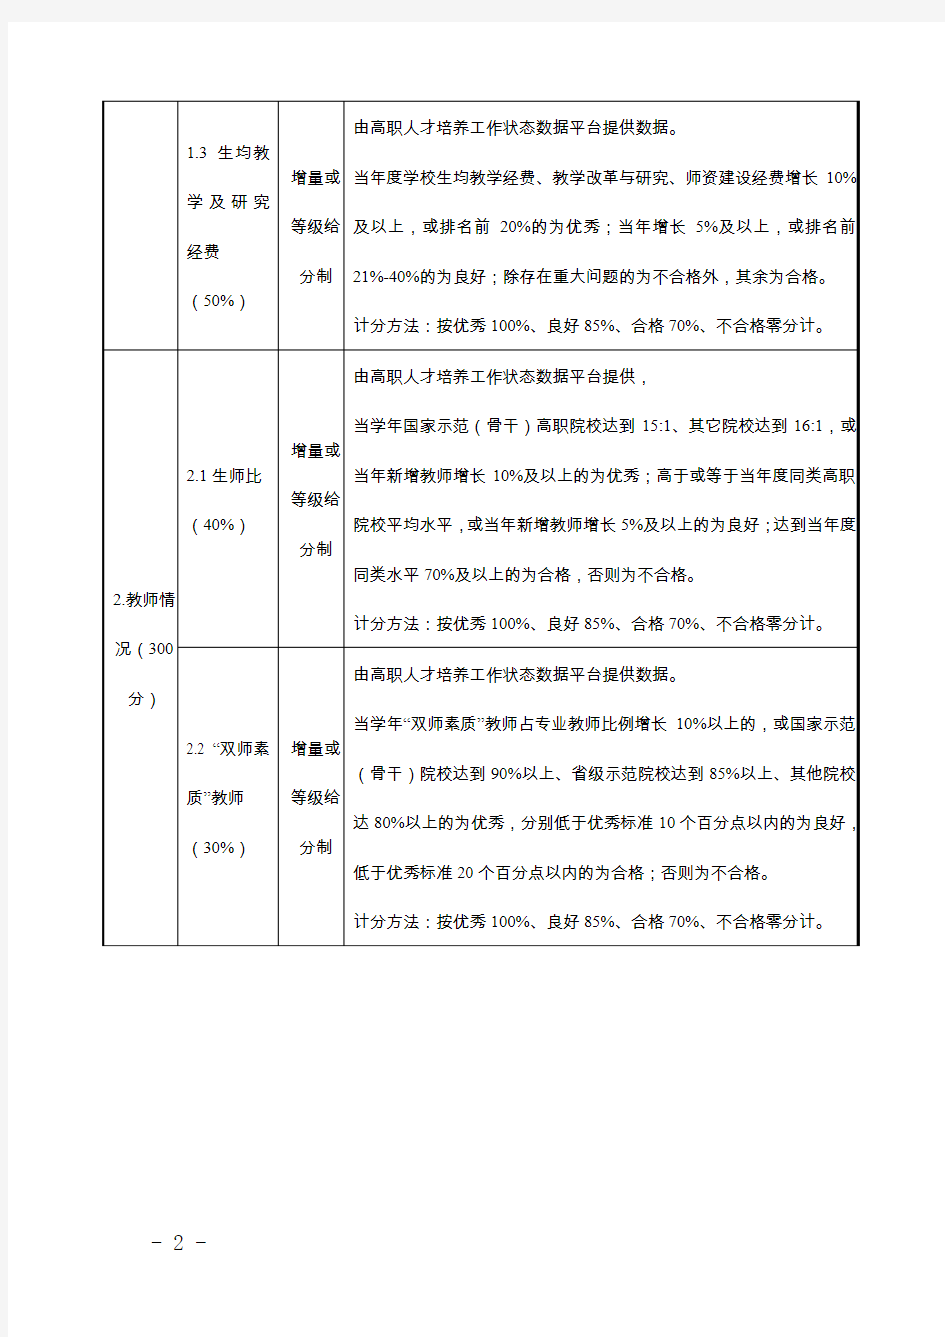 浙江高职高专院校教学工作及业绩考核指标体系